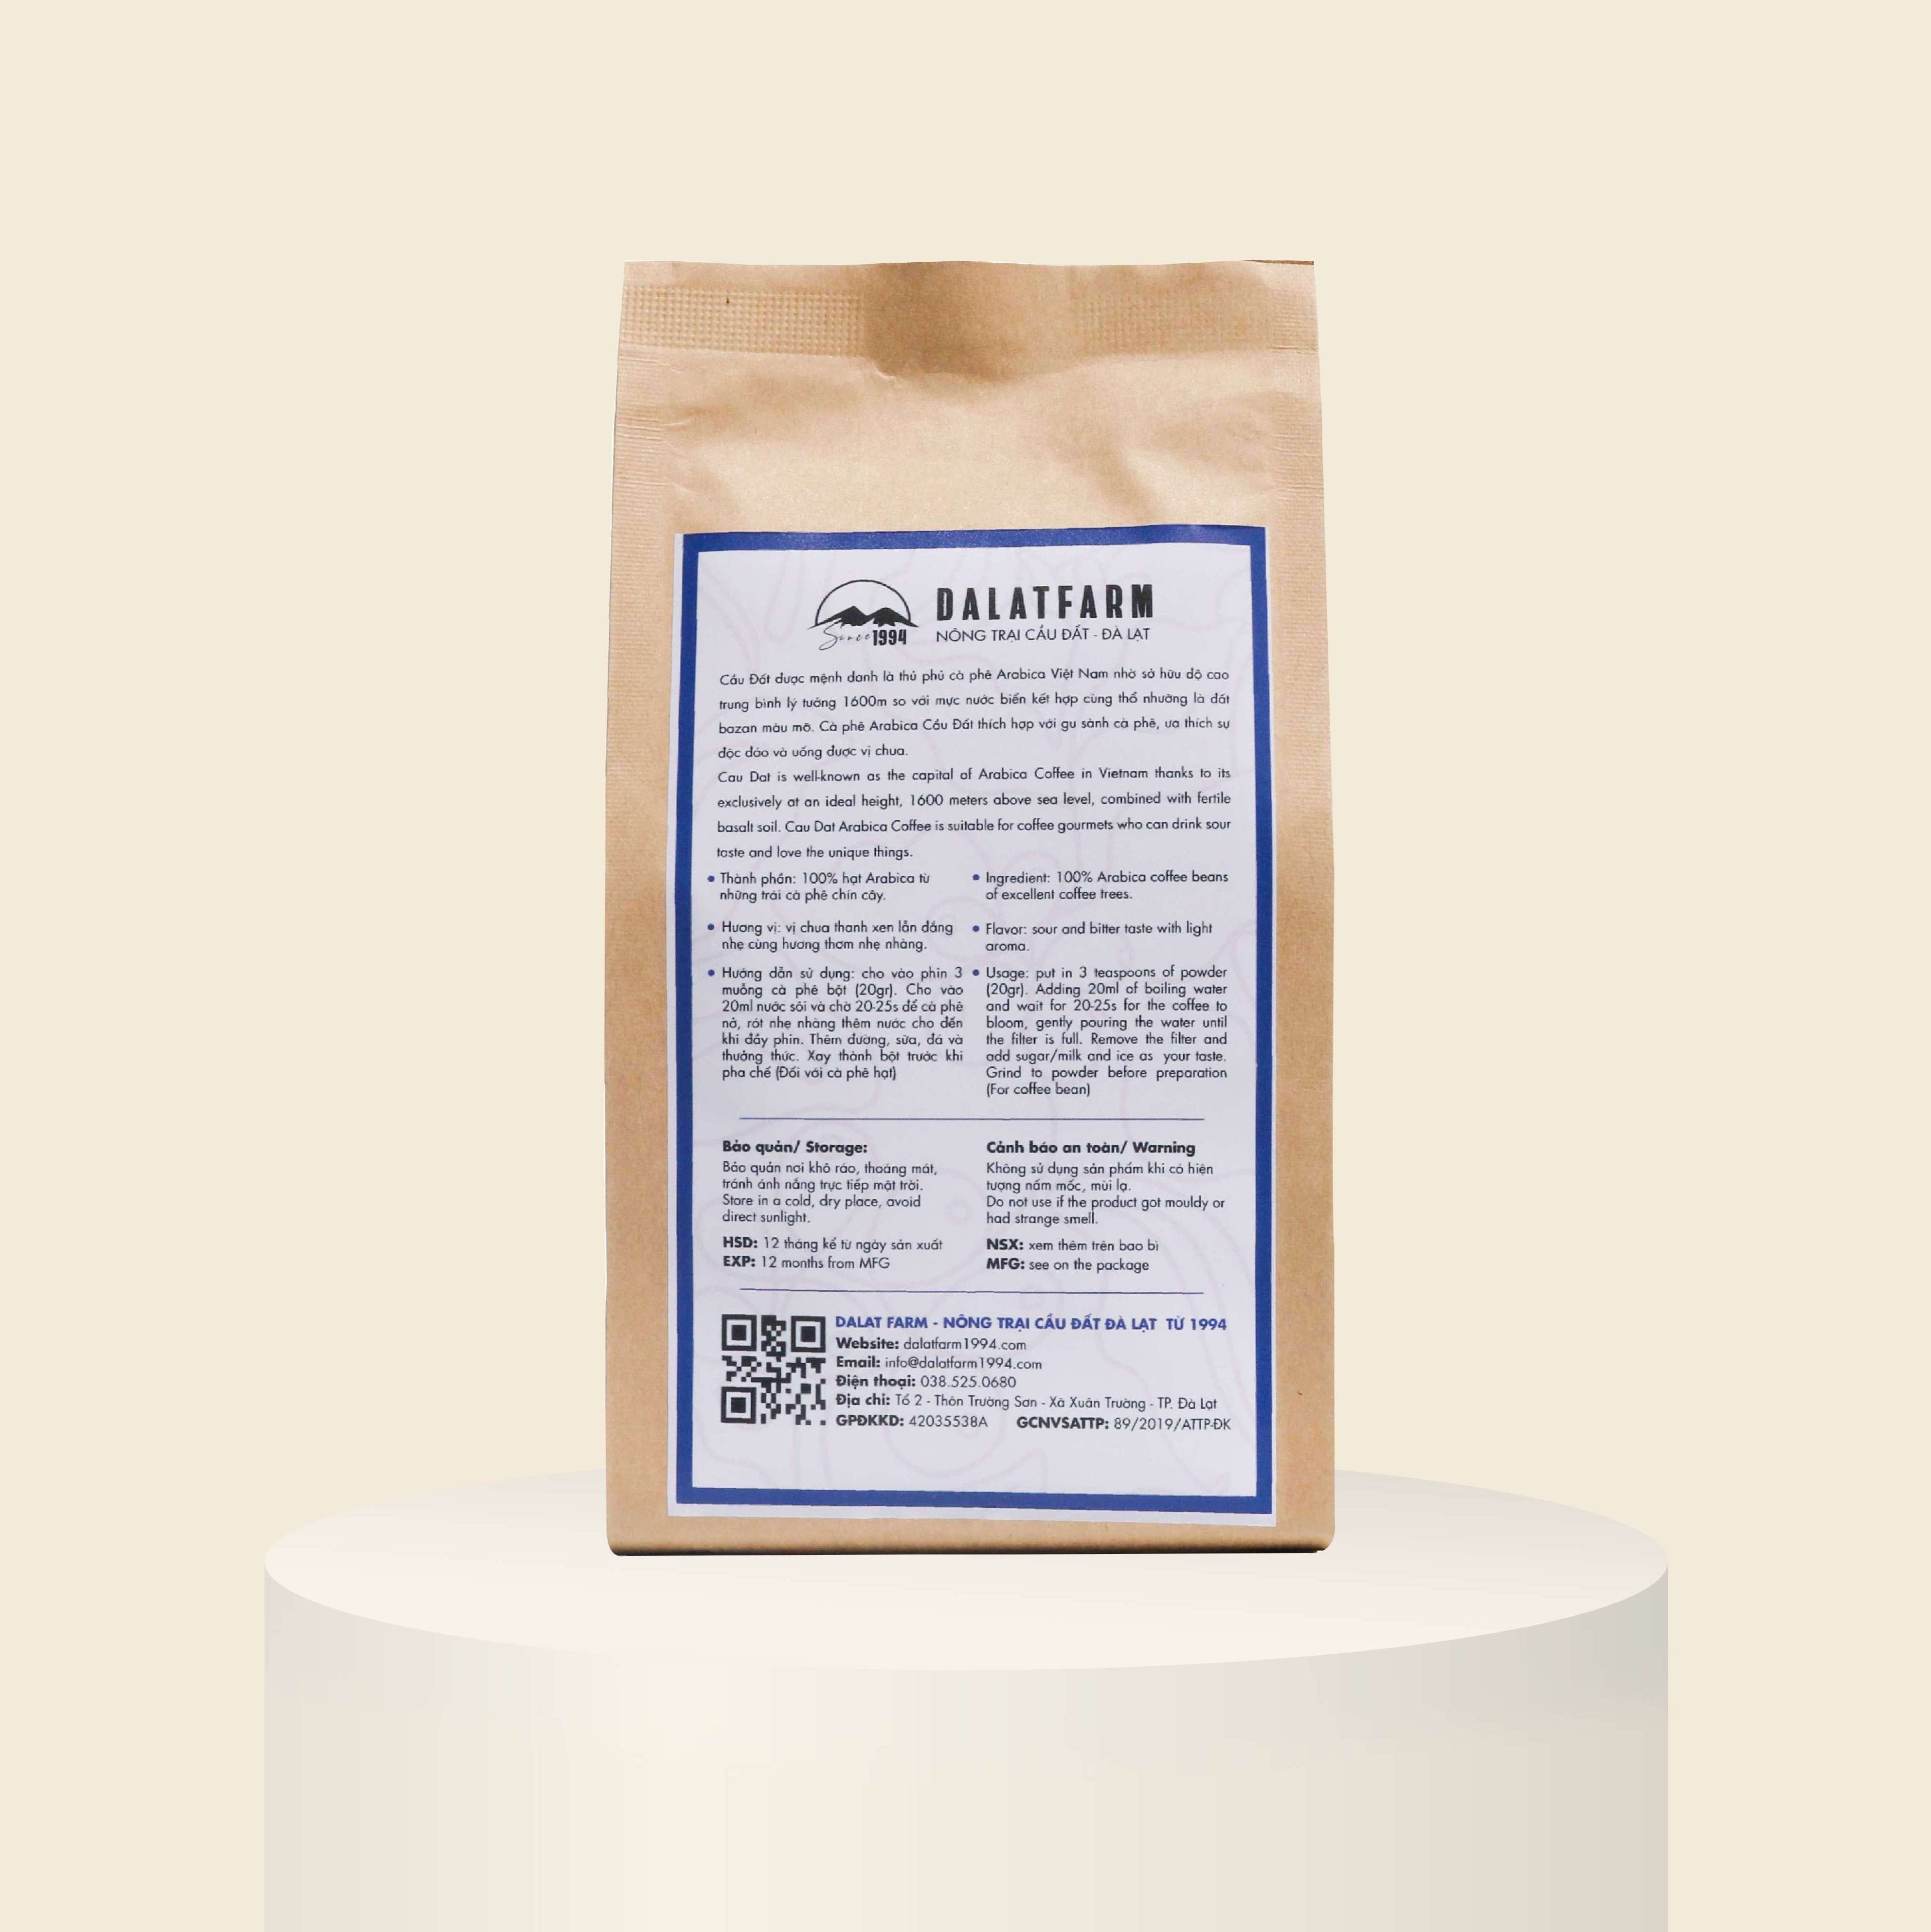 Cà phê Arabica Cầu Đất rang mộc sạch nguyên chất - Túi 250Gr (Dạng Bột)